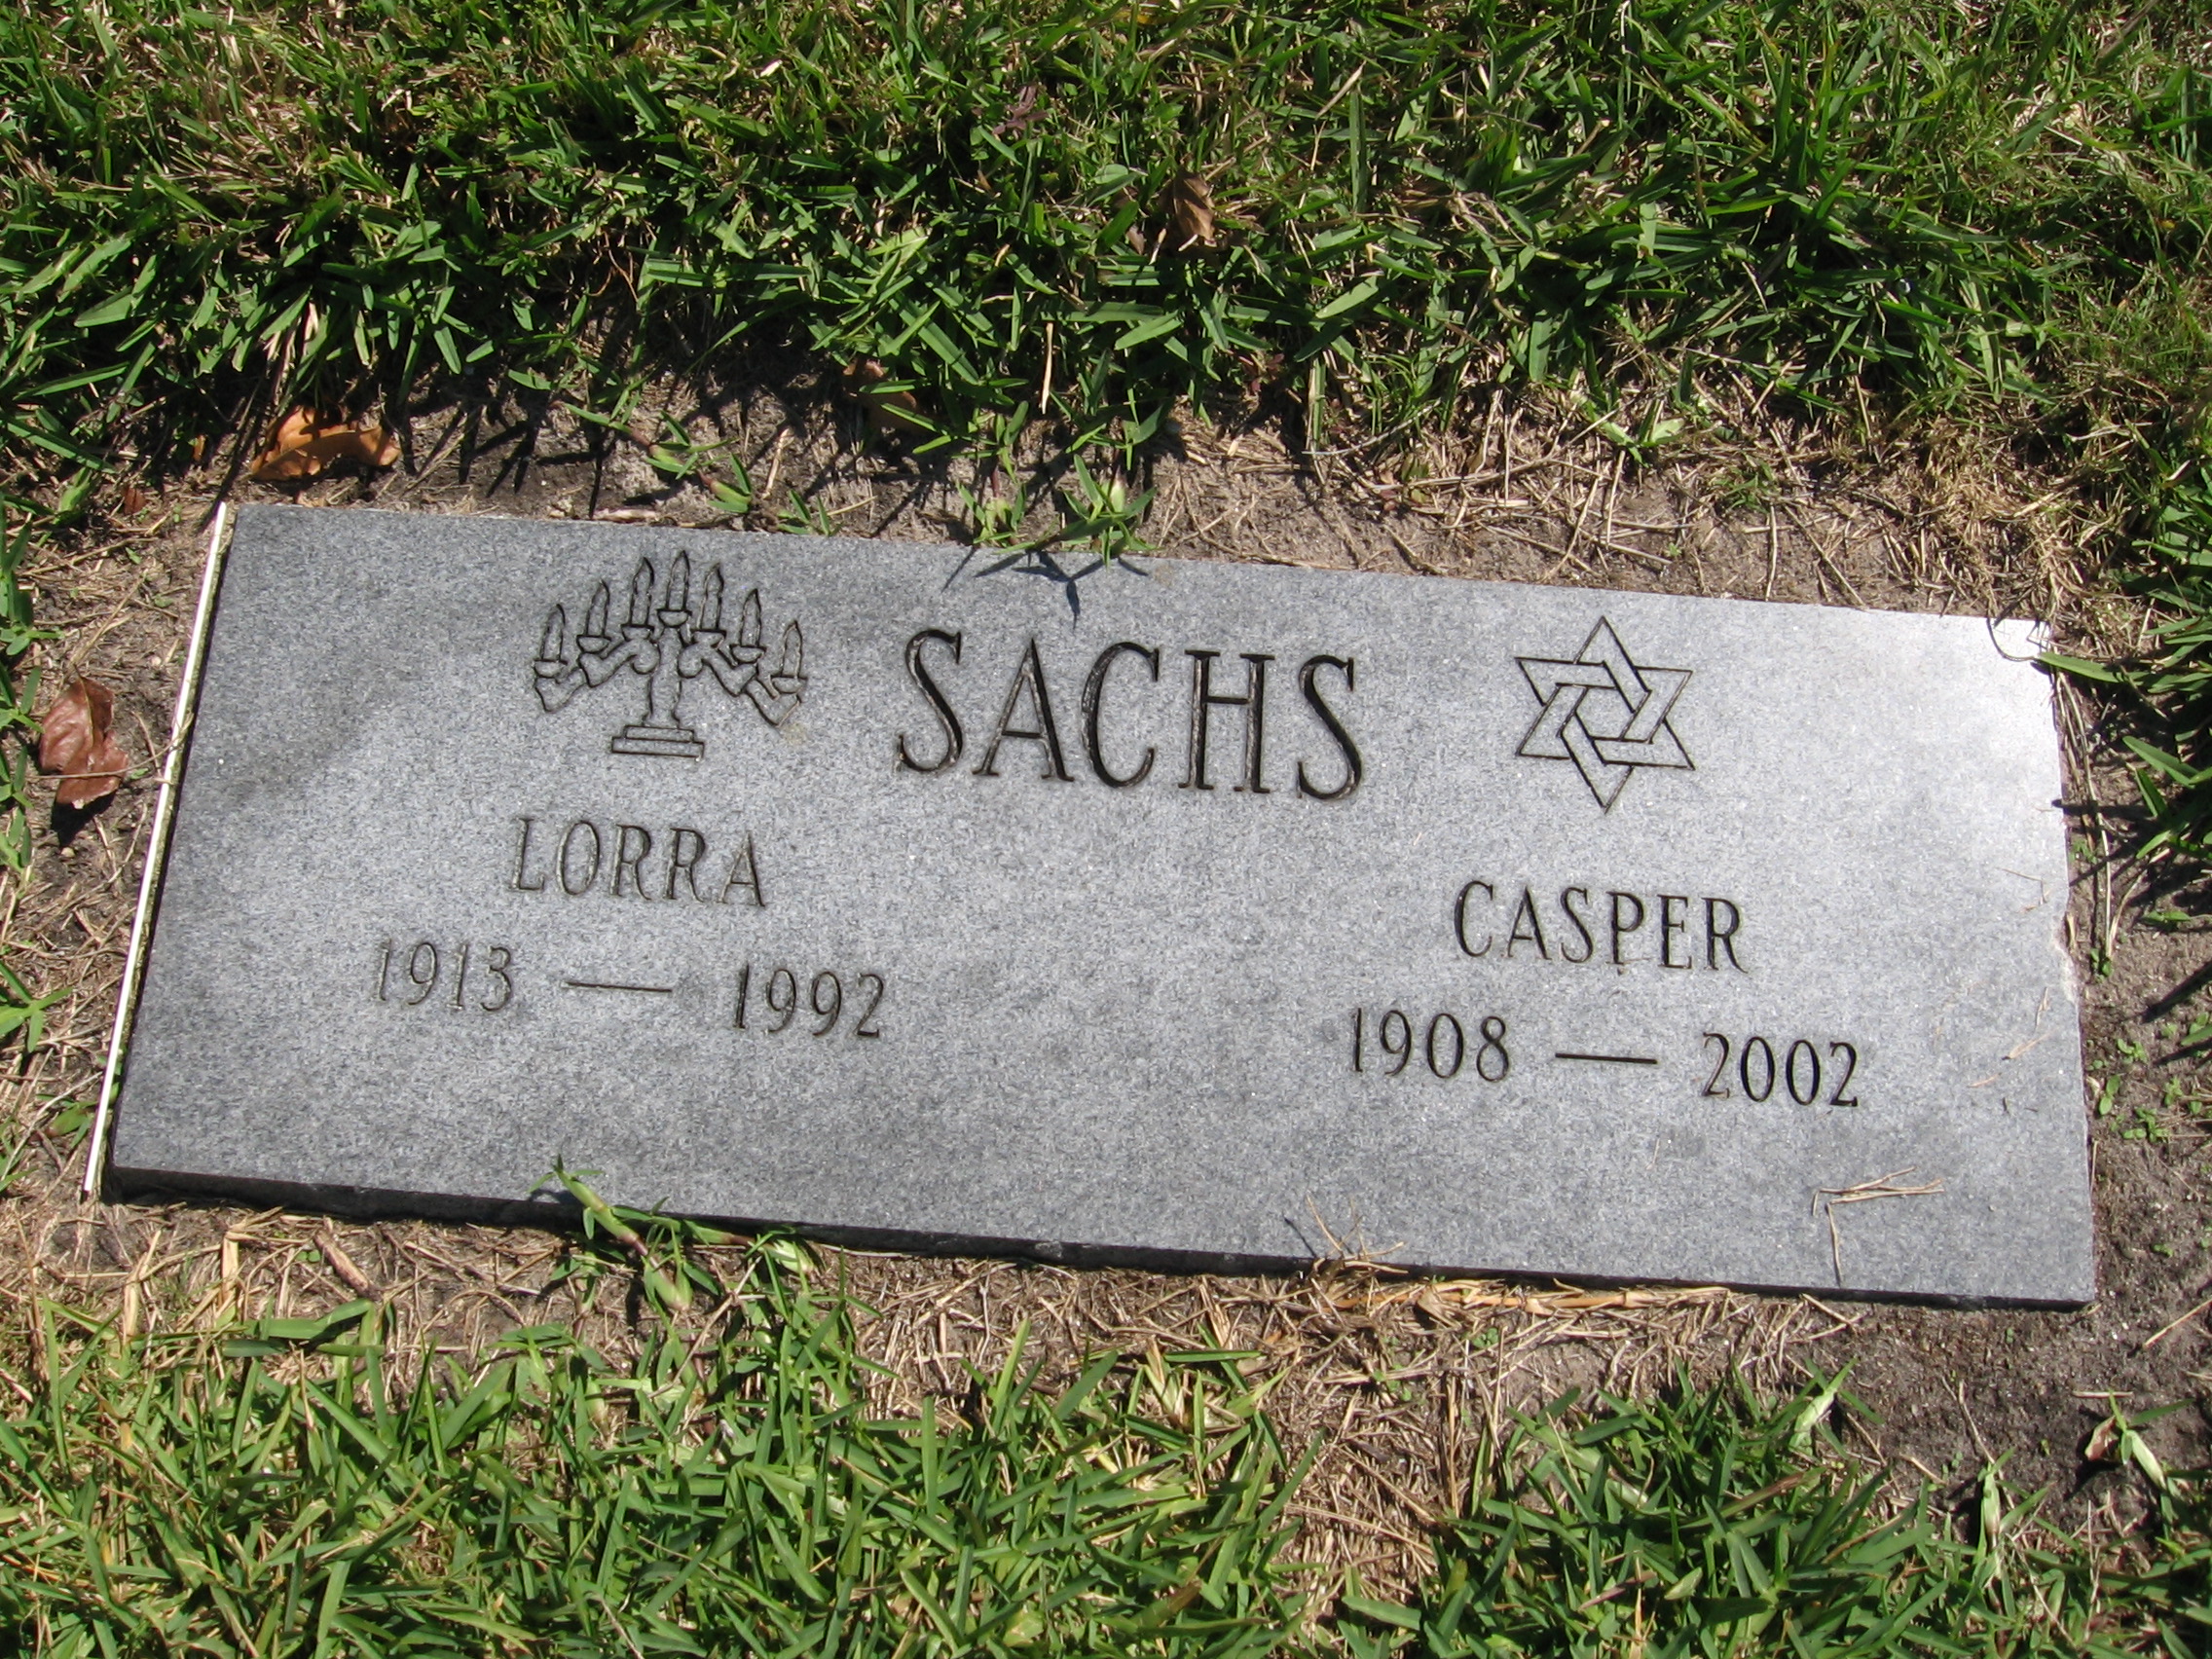 Casper Sachs